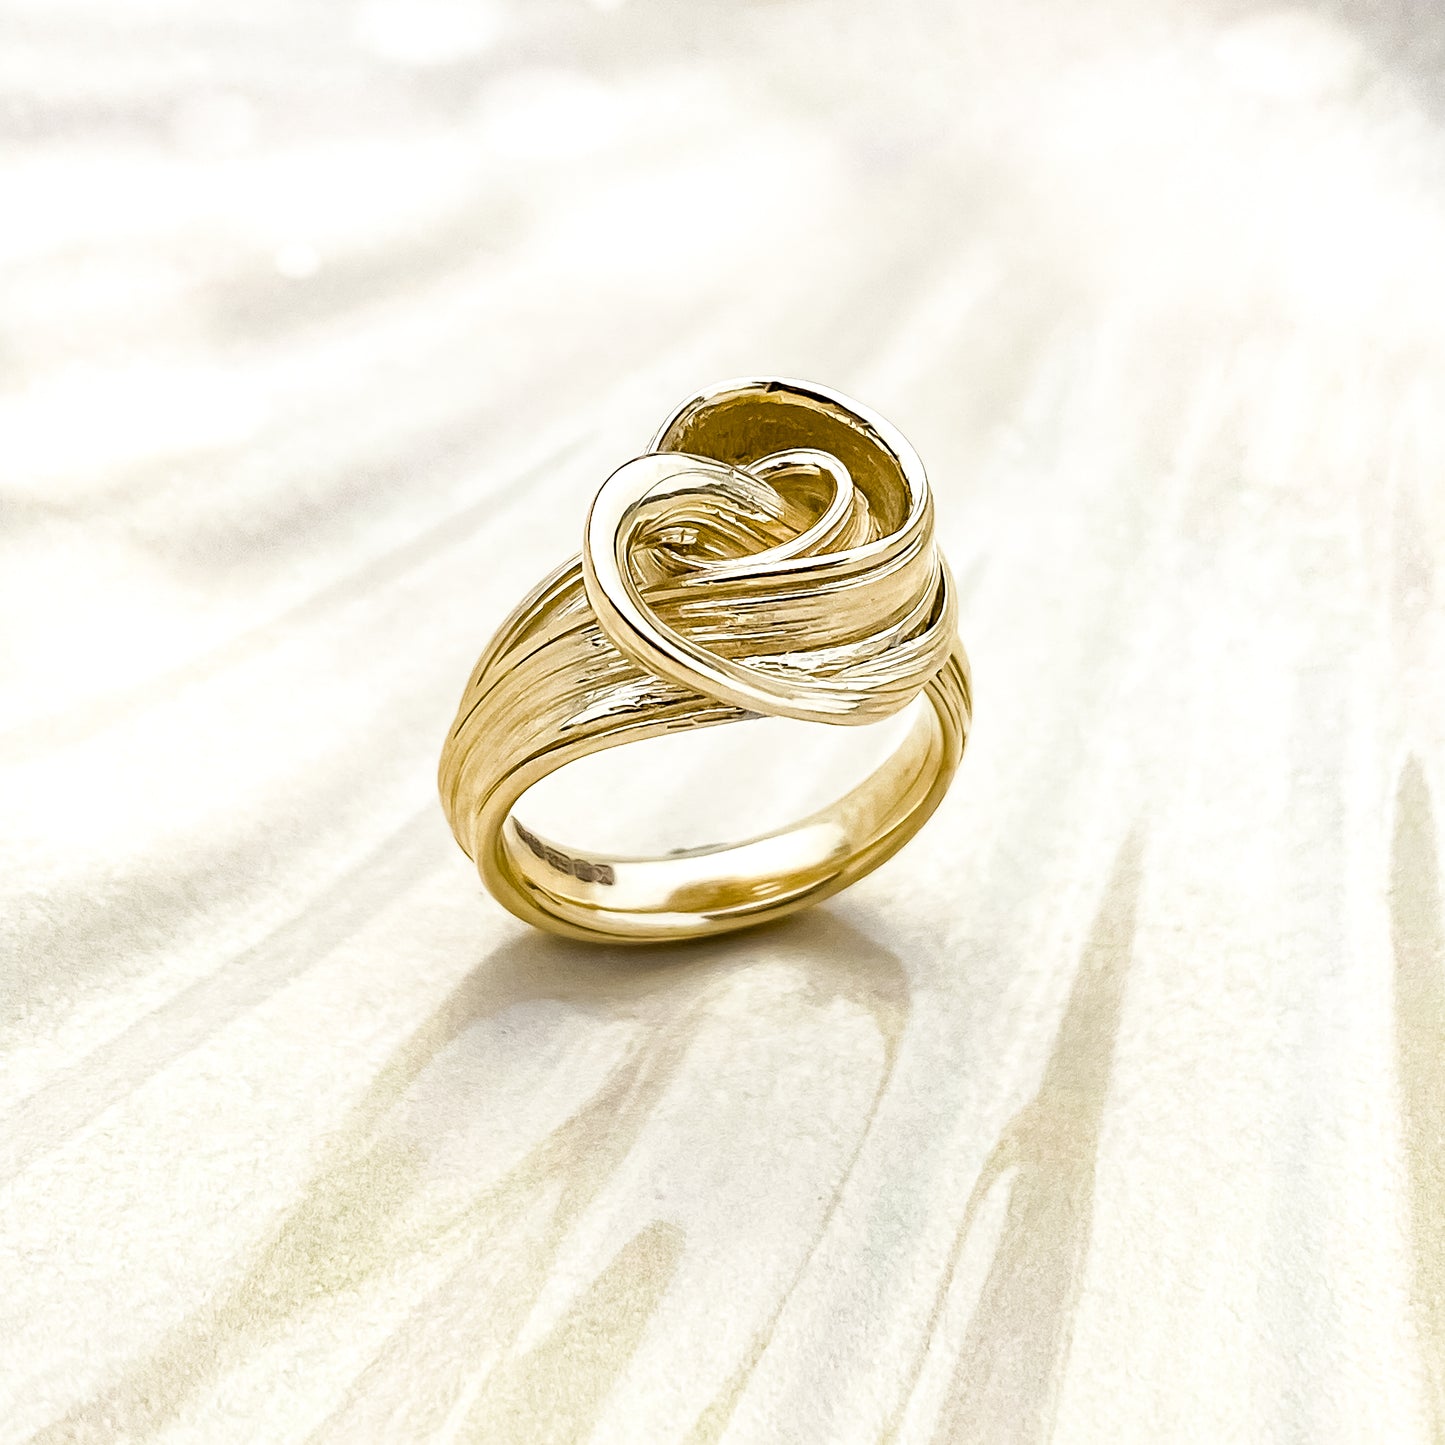 Gold Drift Ring - Size K 1/2